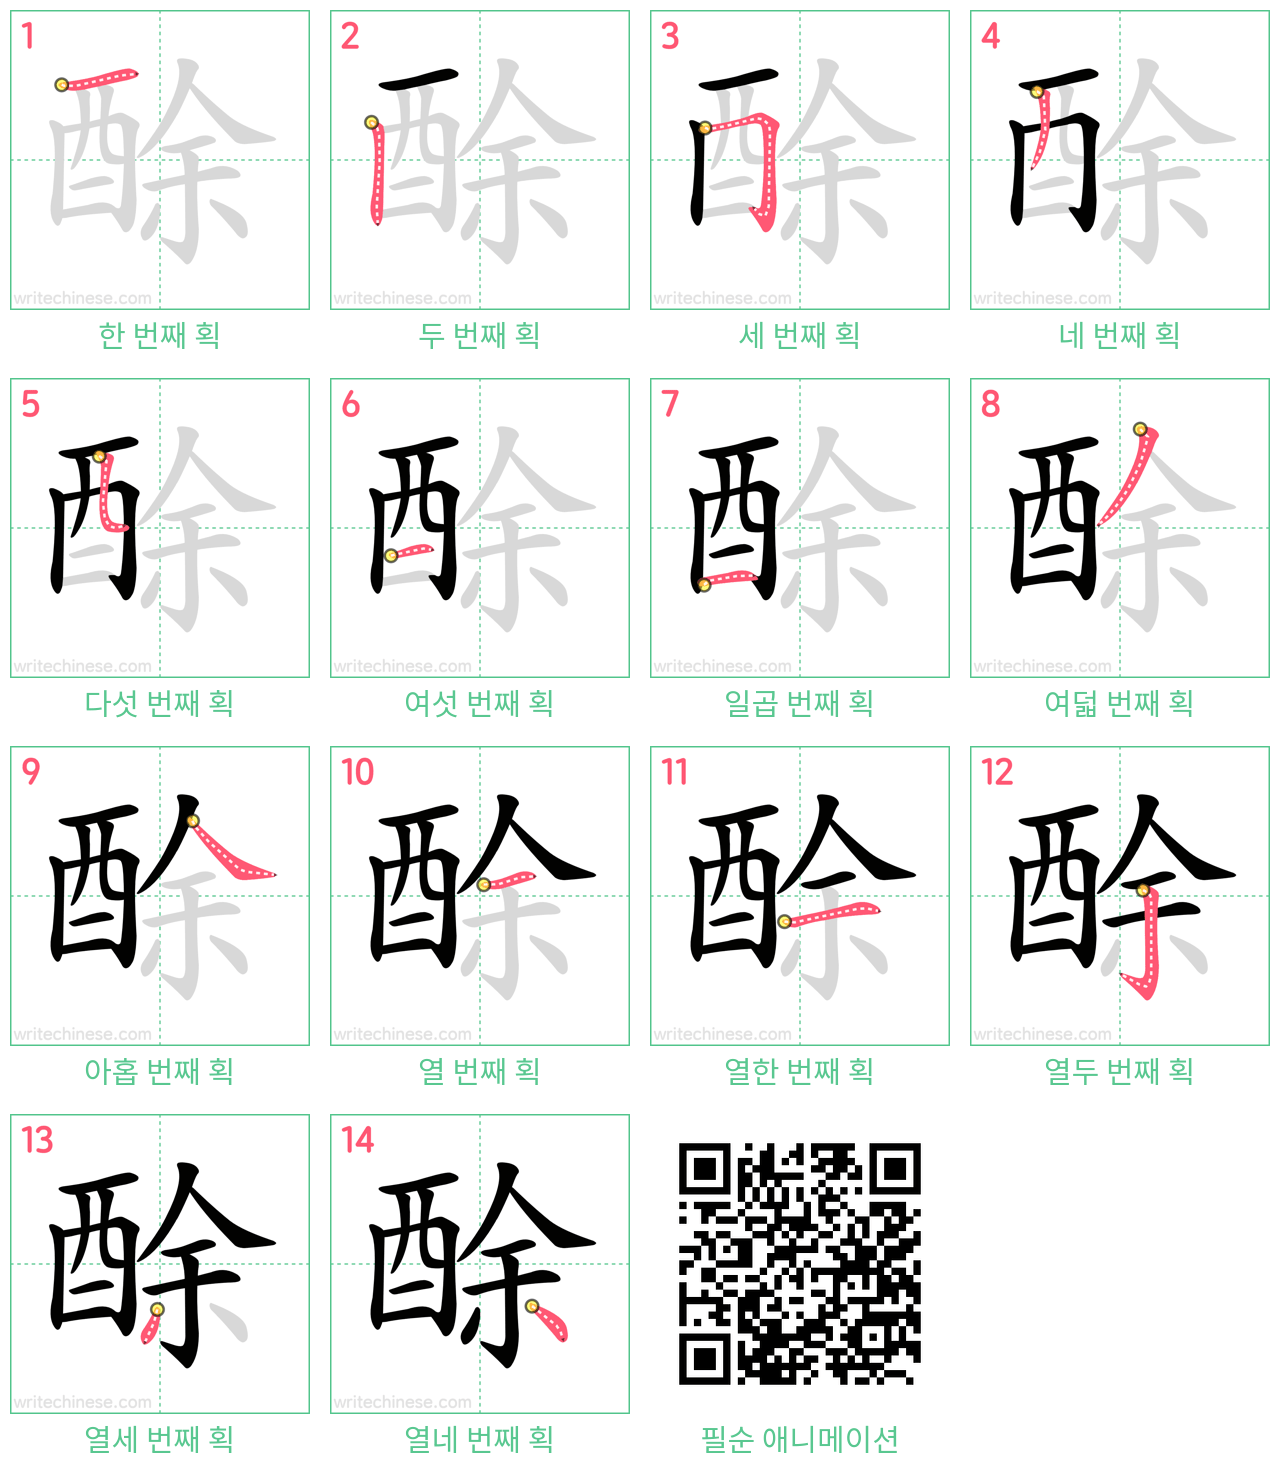 酴 step-by-step stroke order diagrams